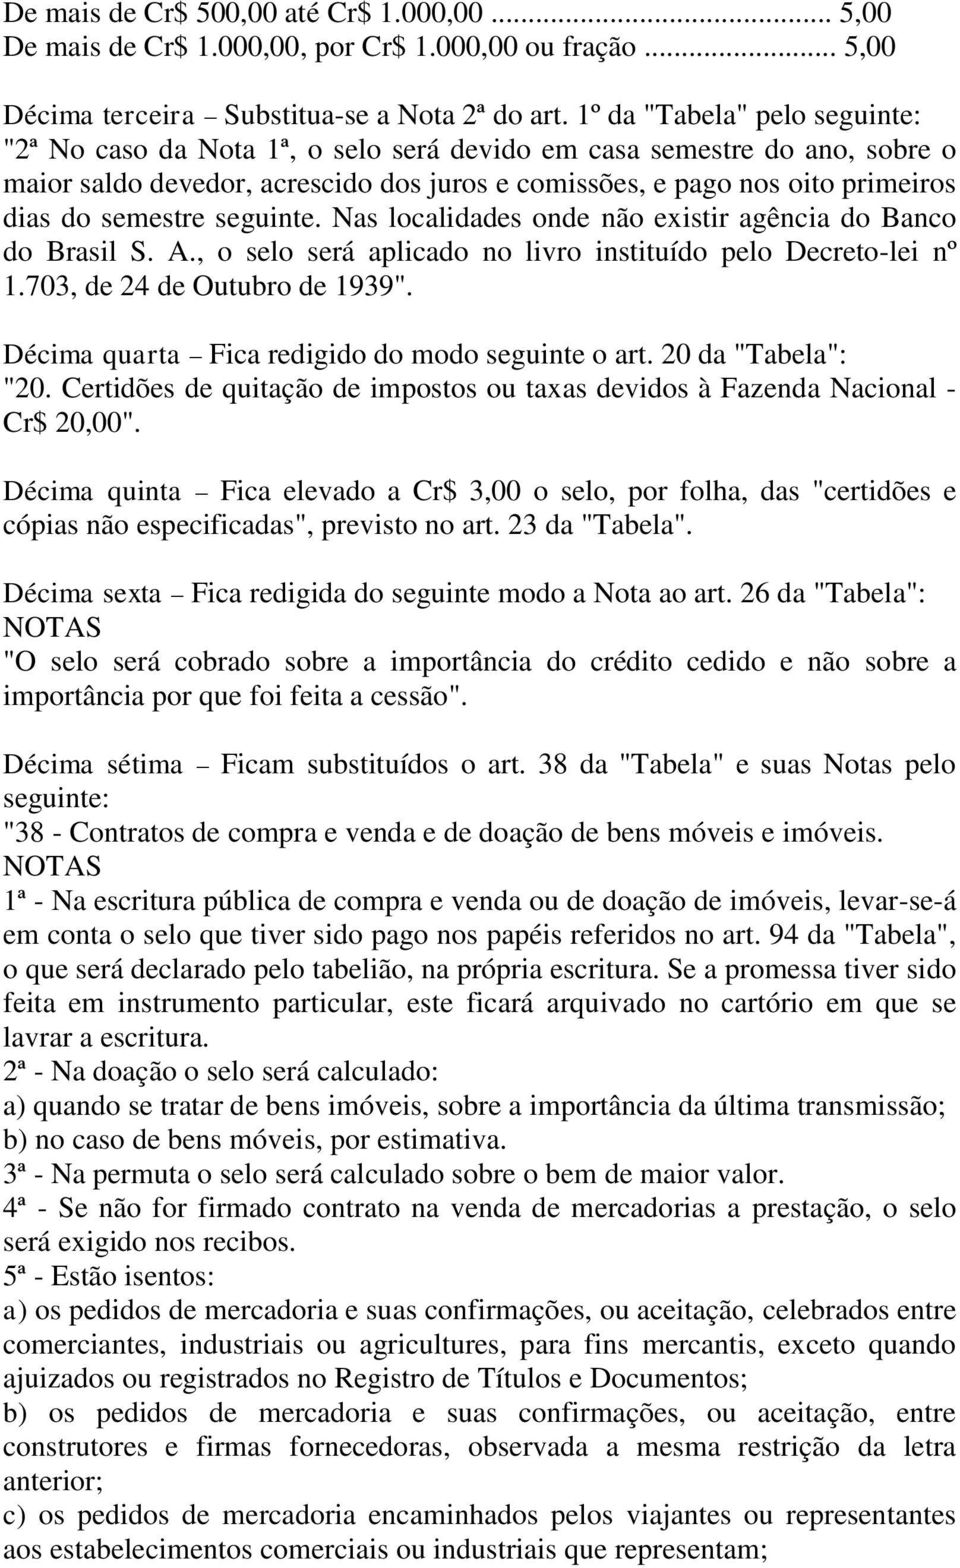 seguinte. Nas localidades onde não existir agência do Banco do Brasil S. A., o selo será aplicado no livro instituído pelo Decreto-lei nº 1.703, de 24 de Outubro de 1939".